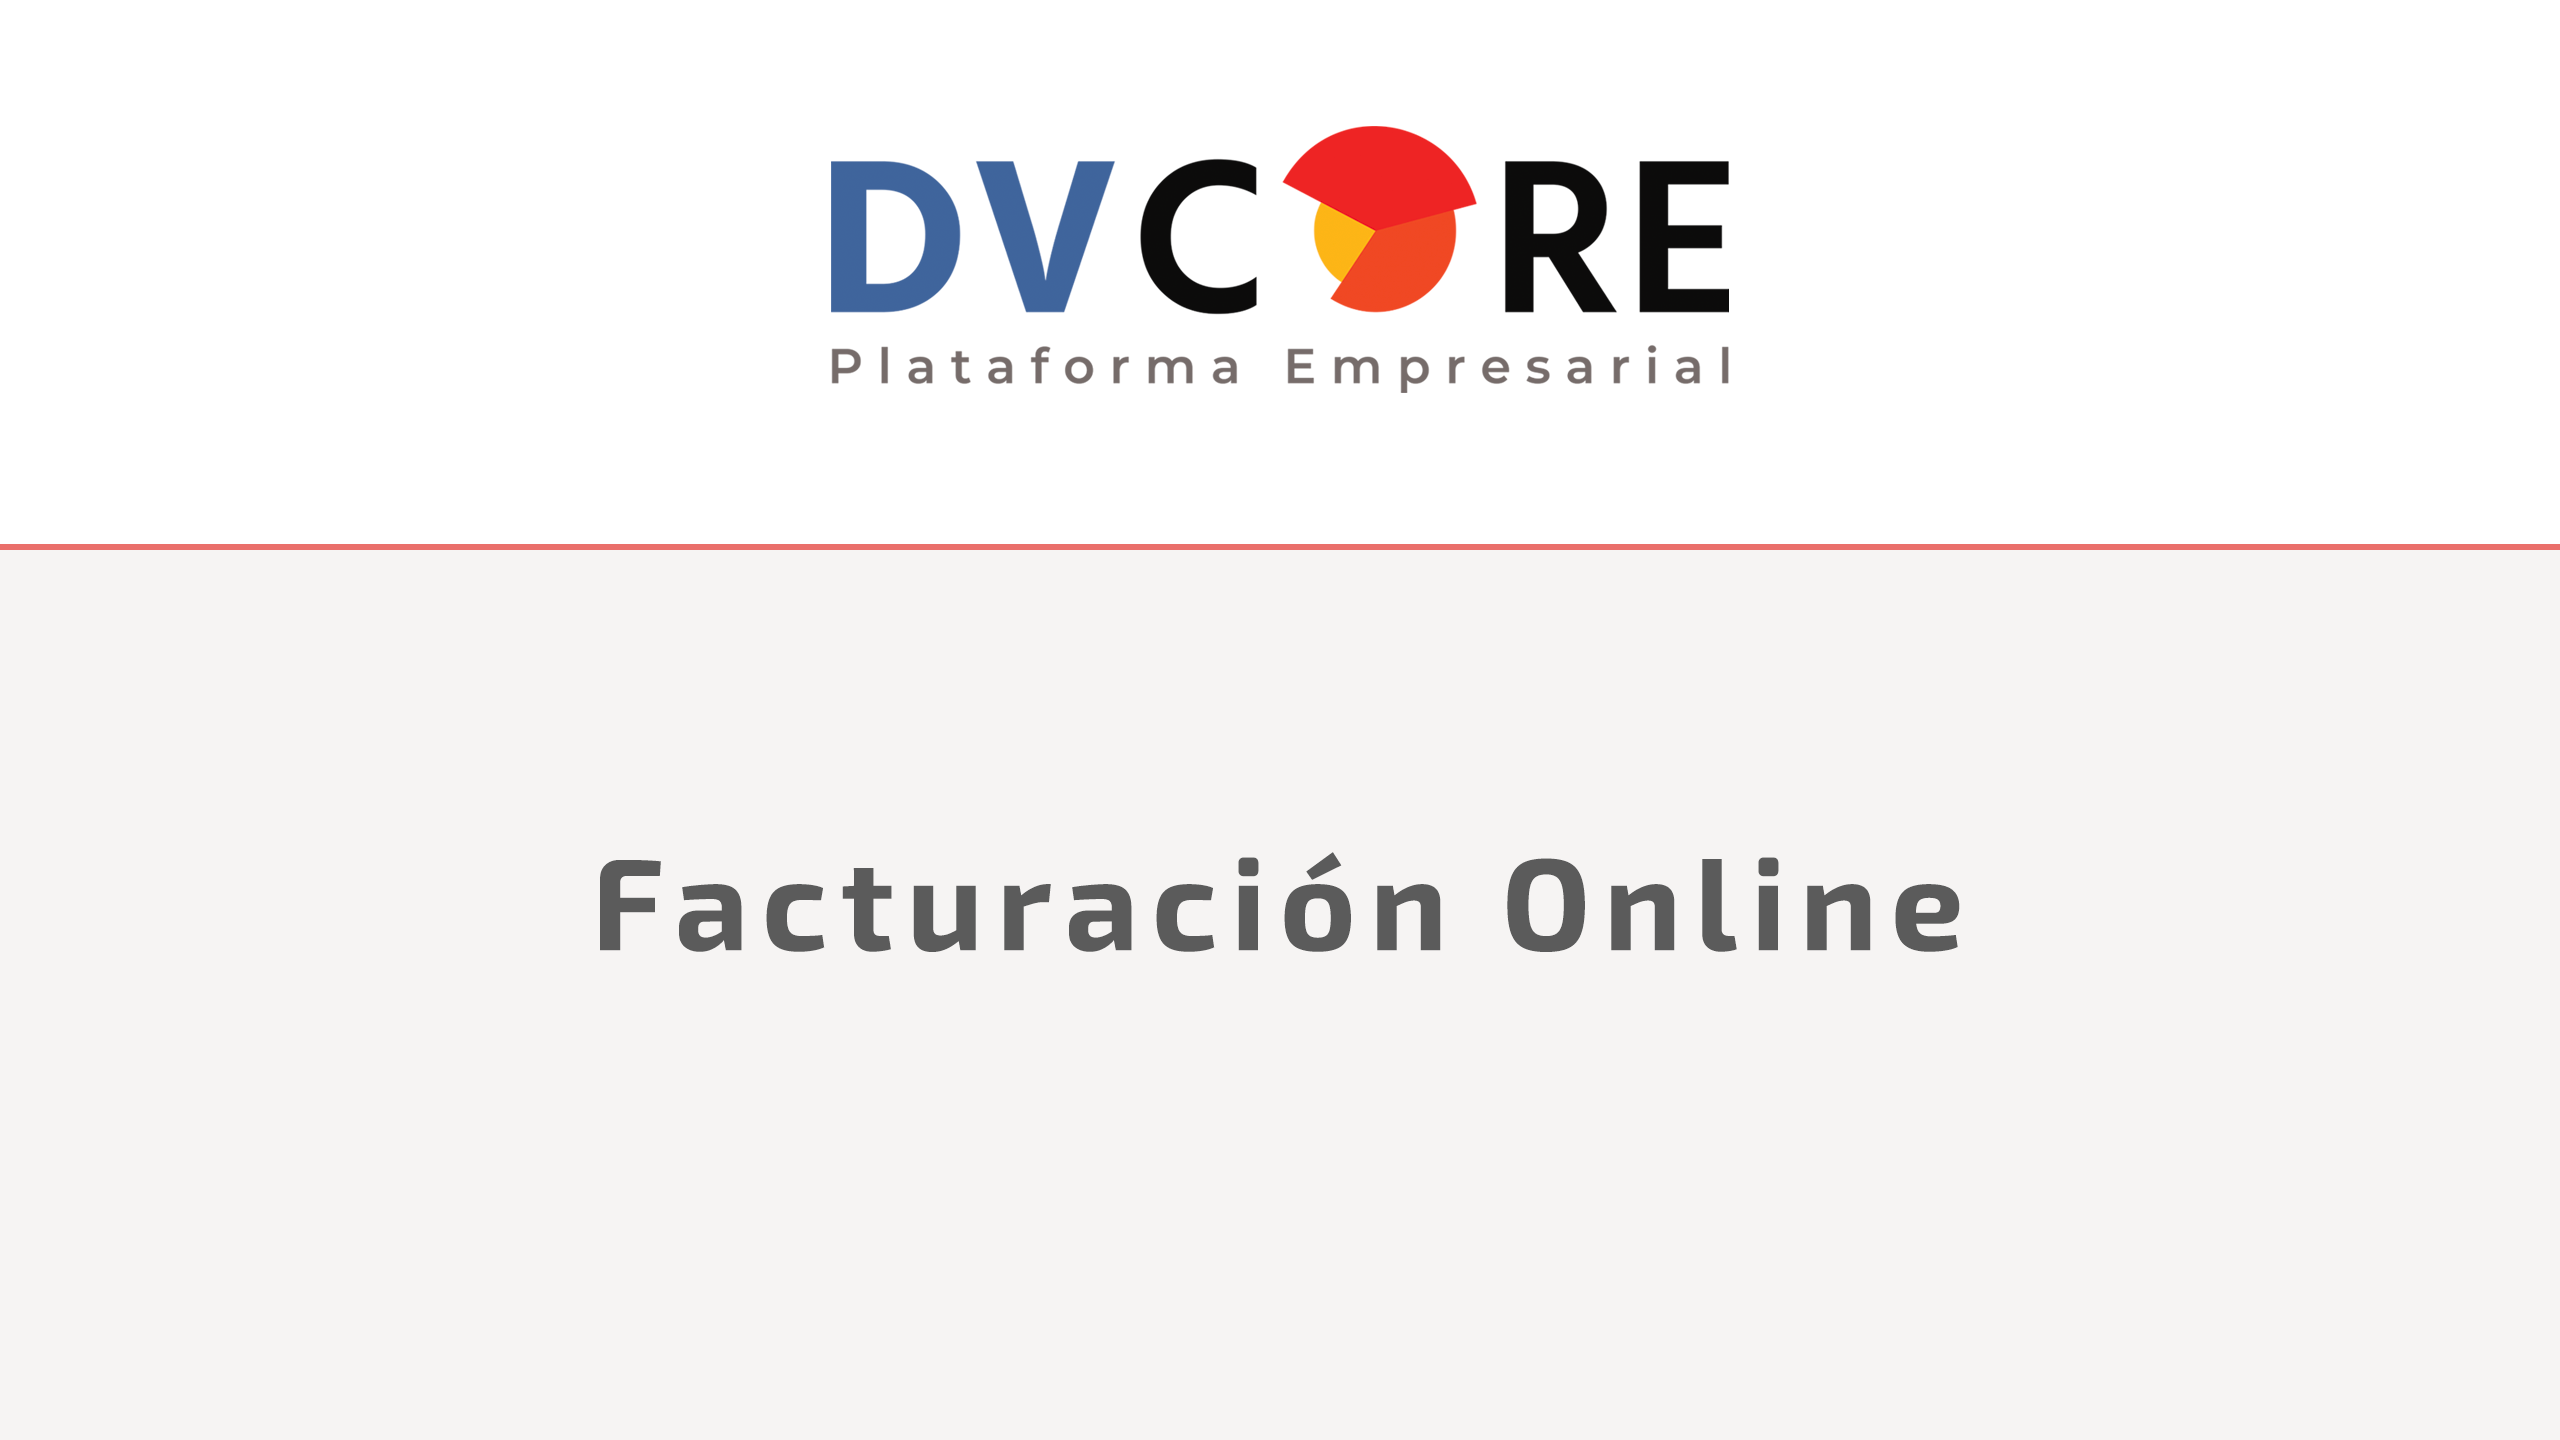 Video / Facturación Online